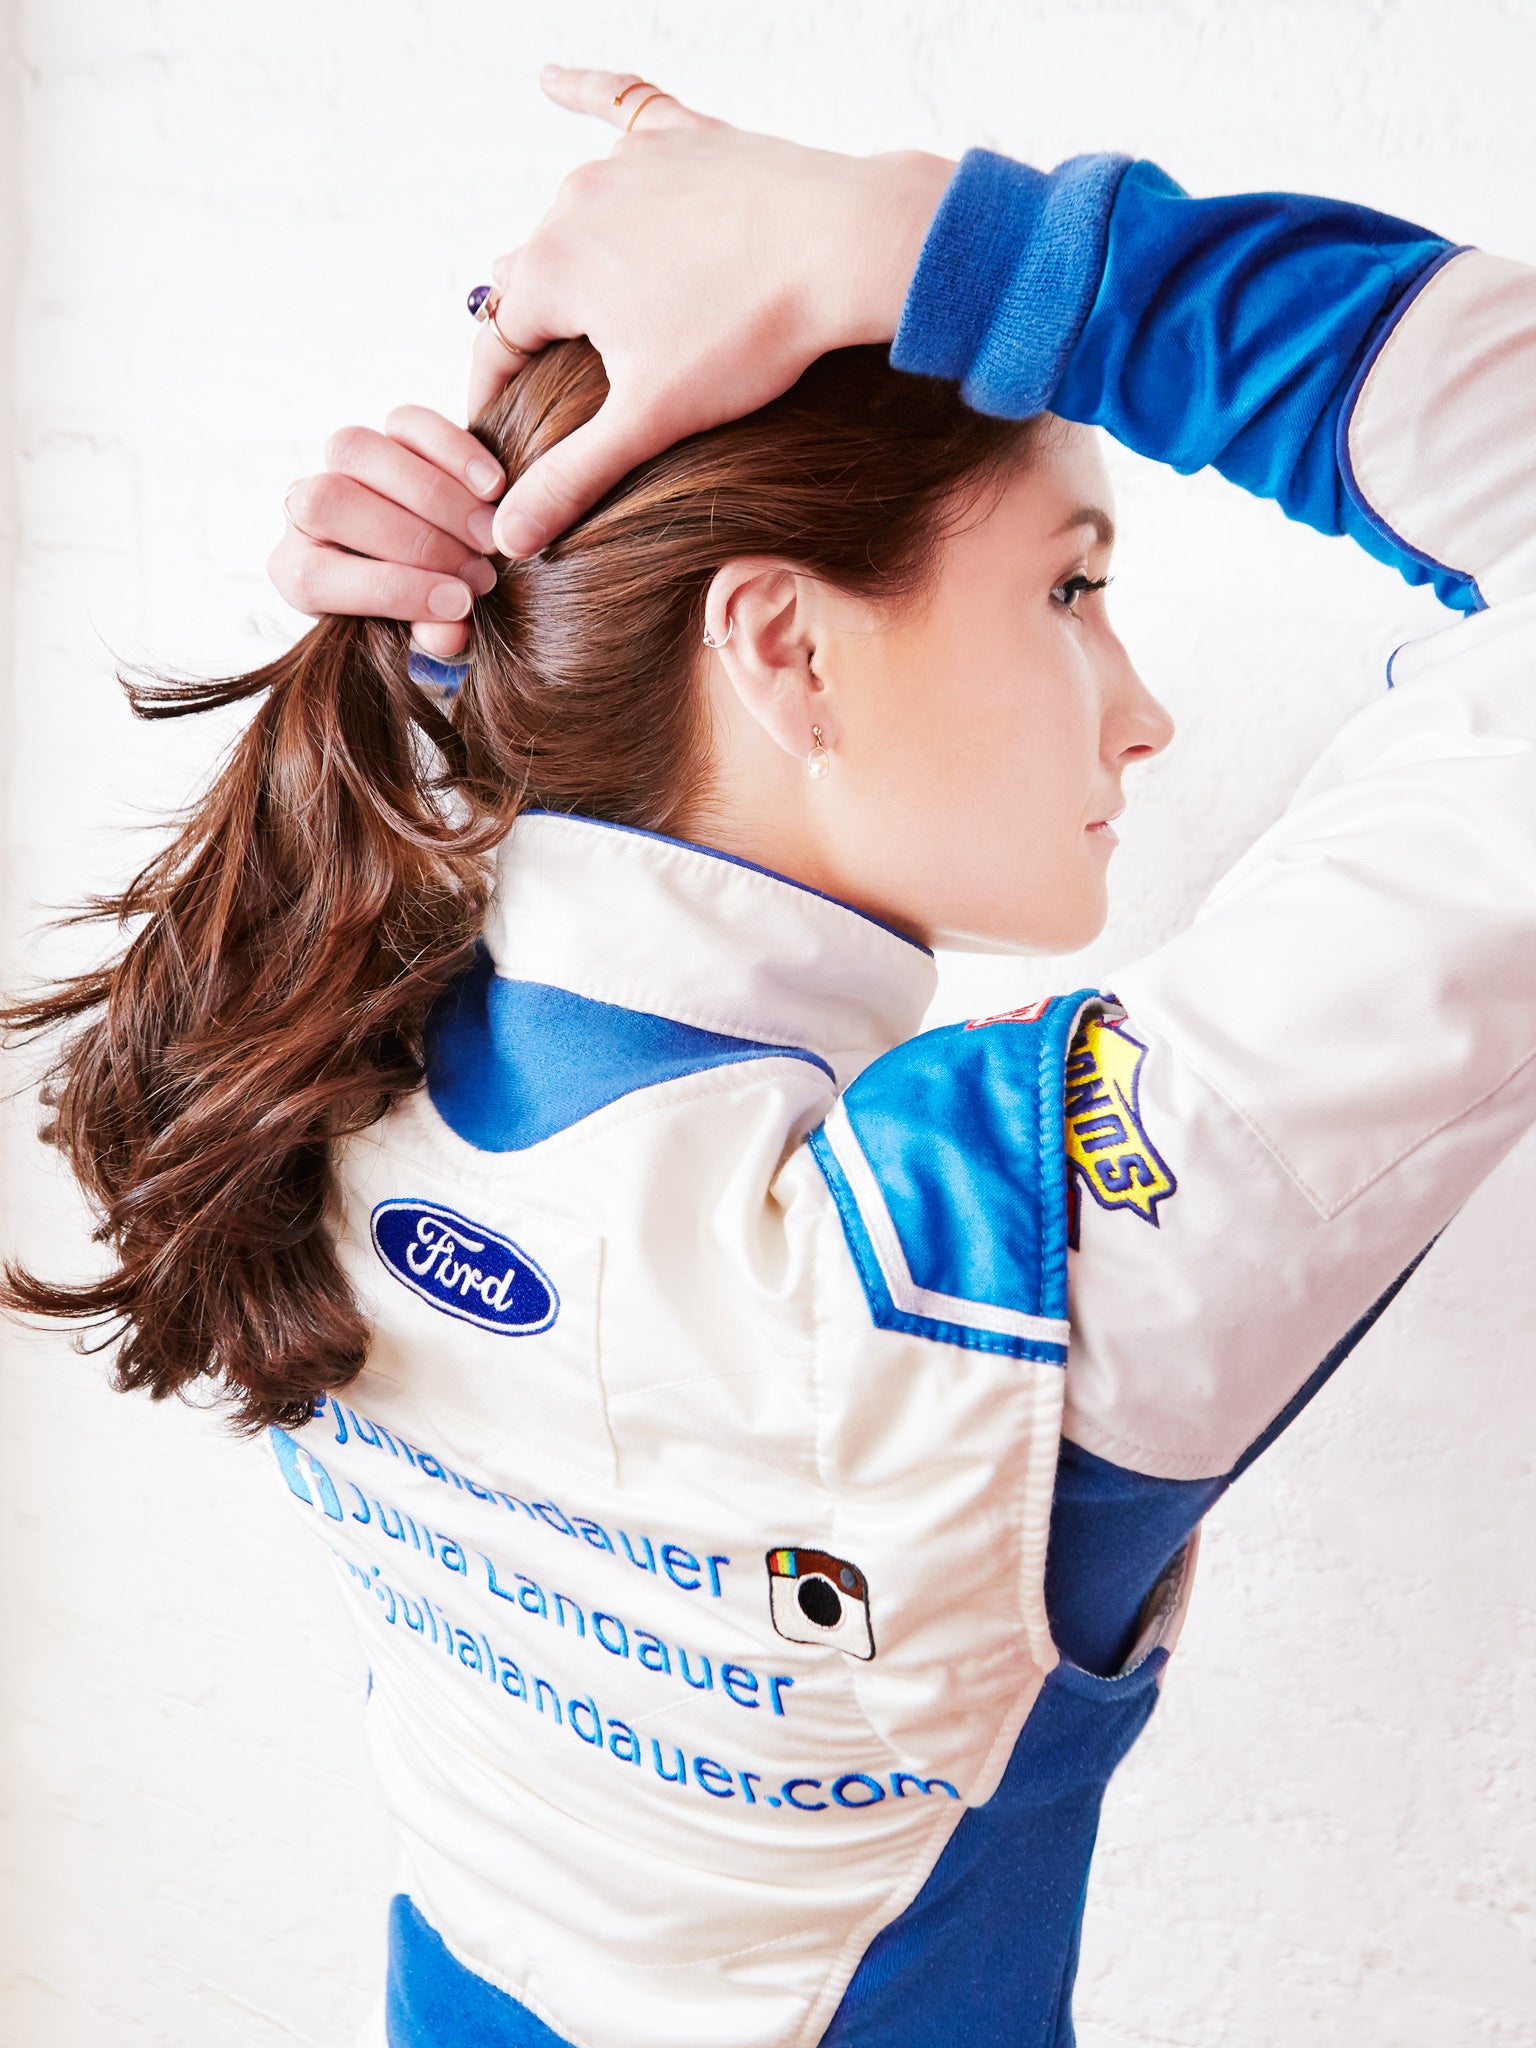 Julia landauer in racing uniform